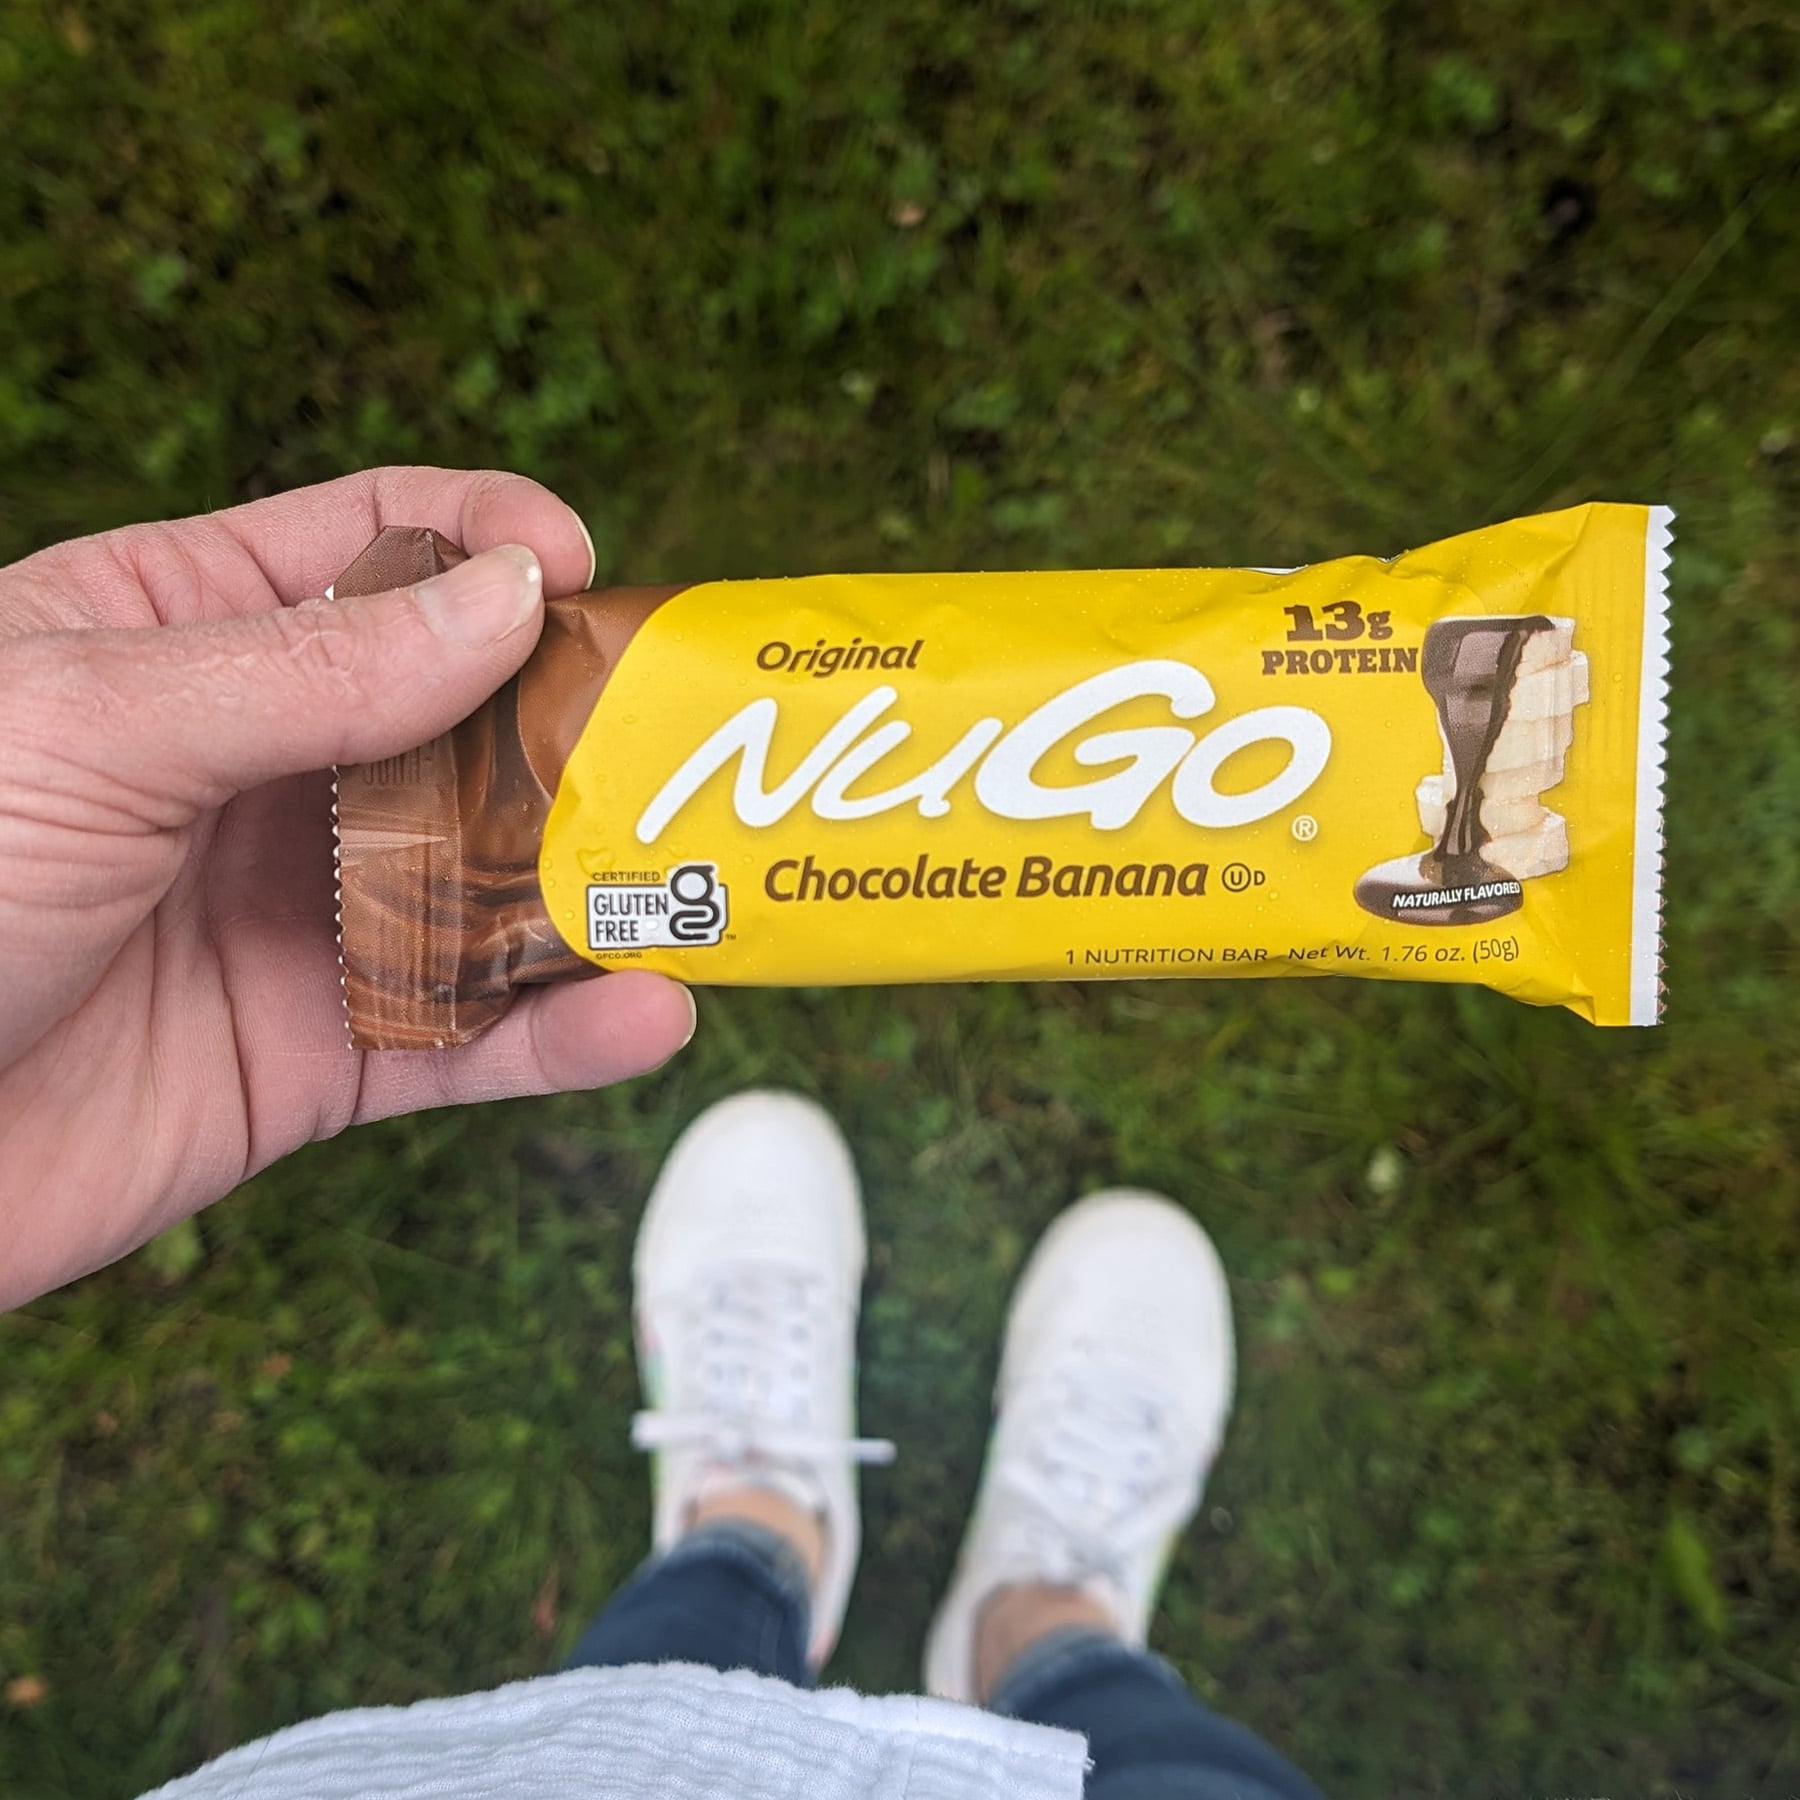 NuGo Original Chocolate Banana Bar held over grass